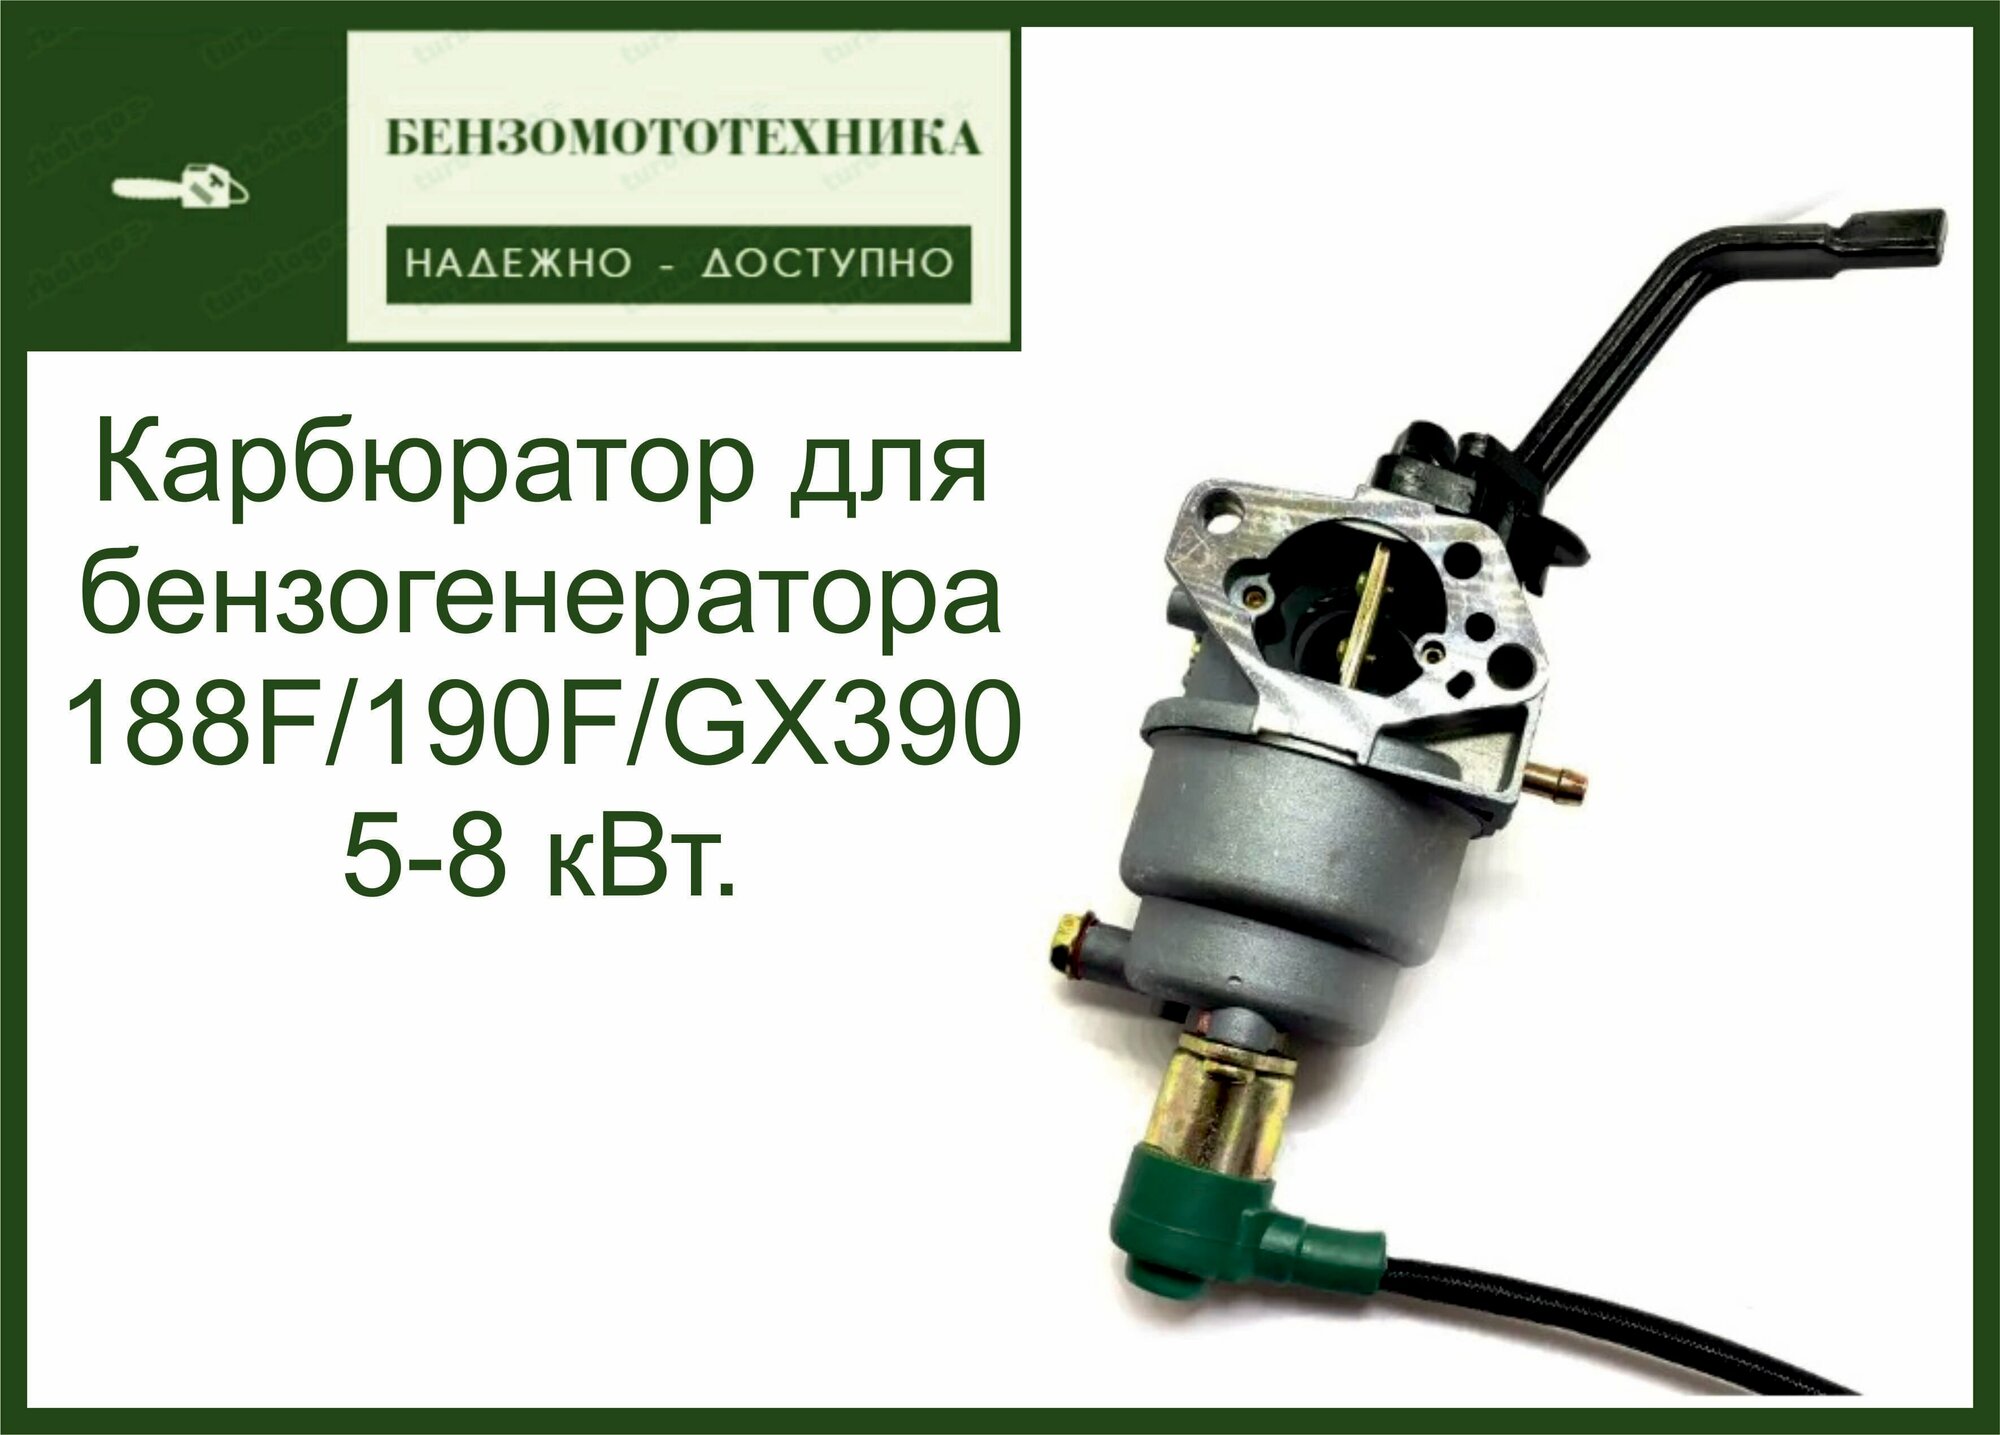 Карбюратор для генератора с Электроклапаном 188-190F/GX390 5-8 кВт.